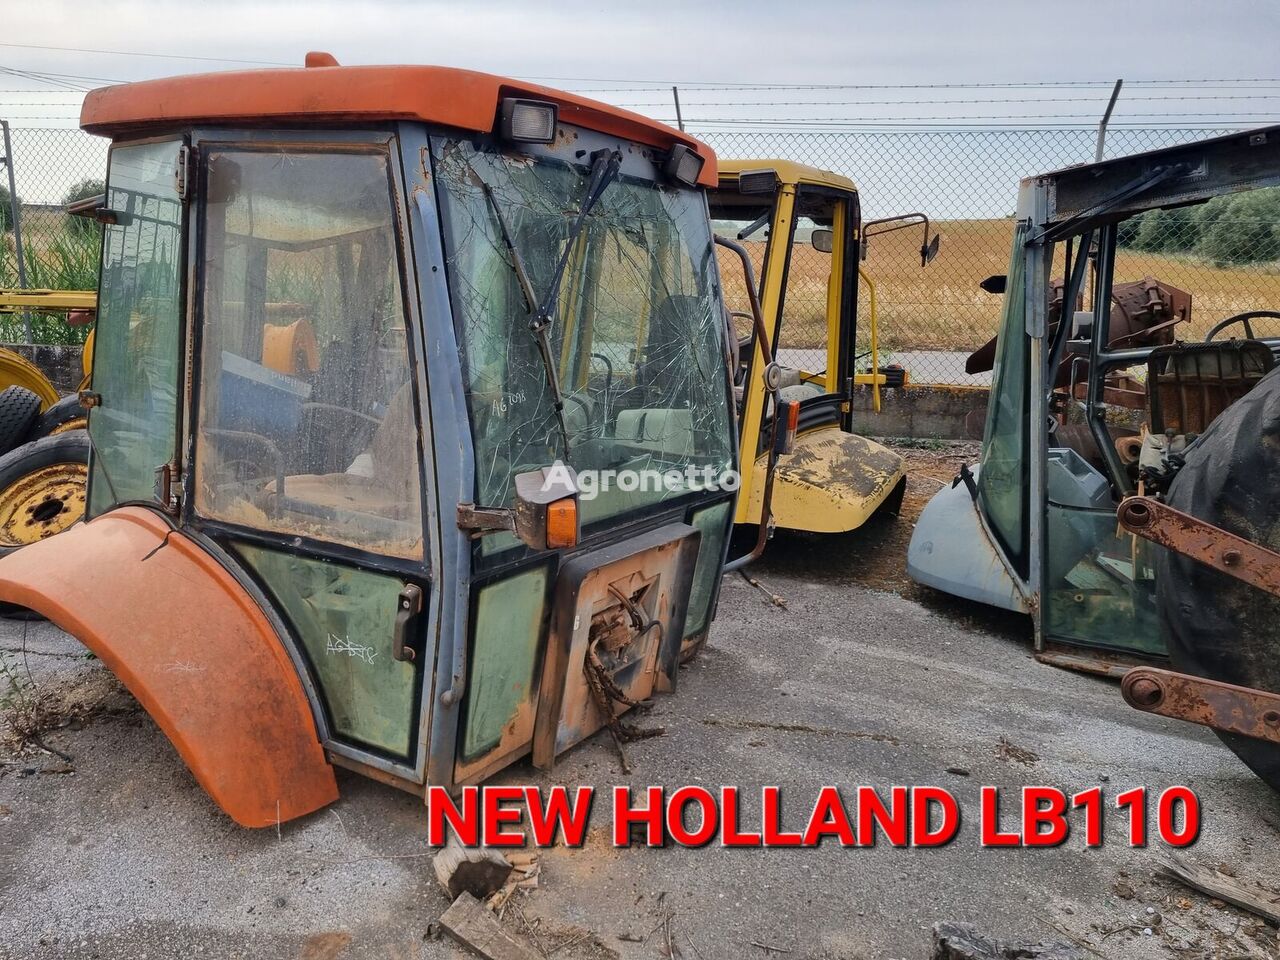 kabina New Holland LB110 vikšrinio traktoriaus dalimis